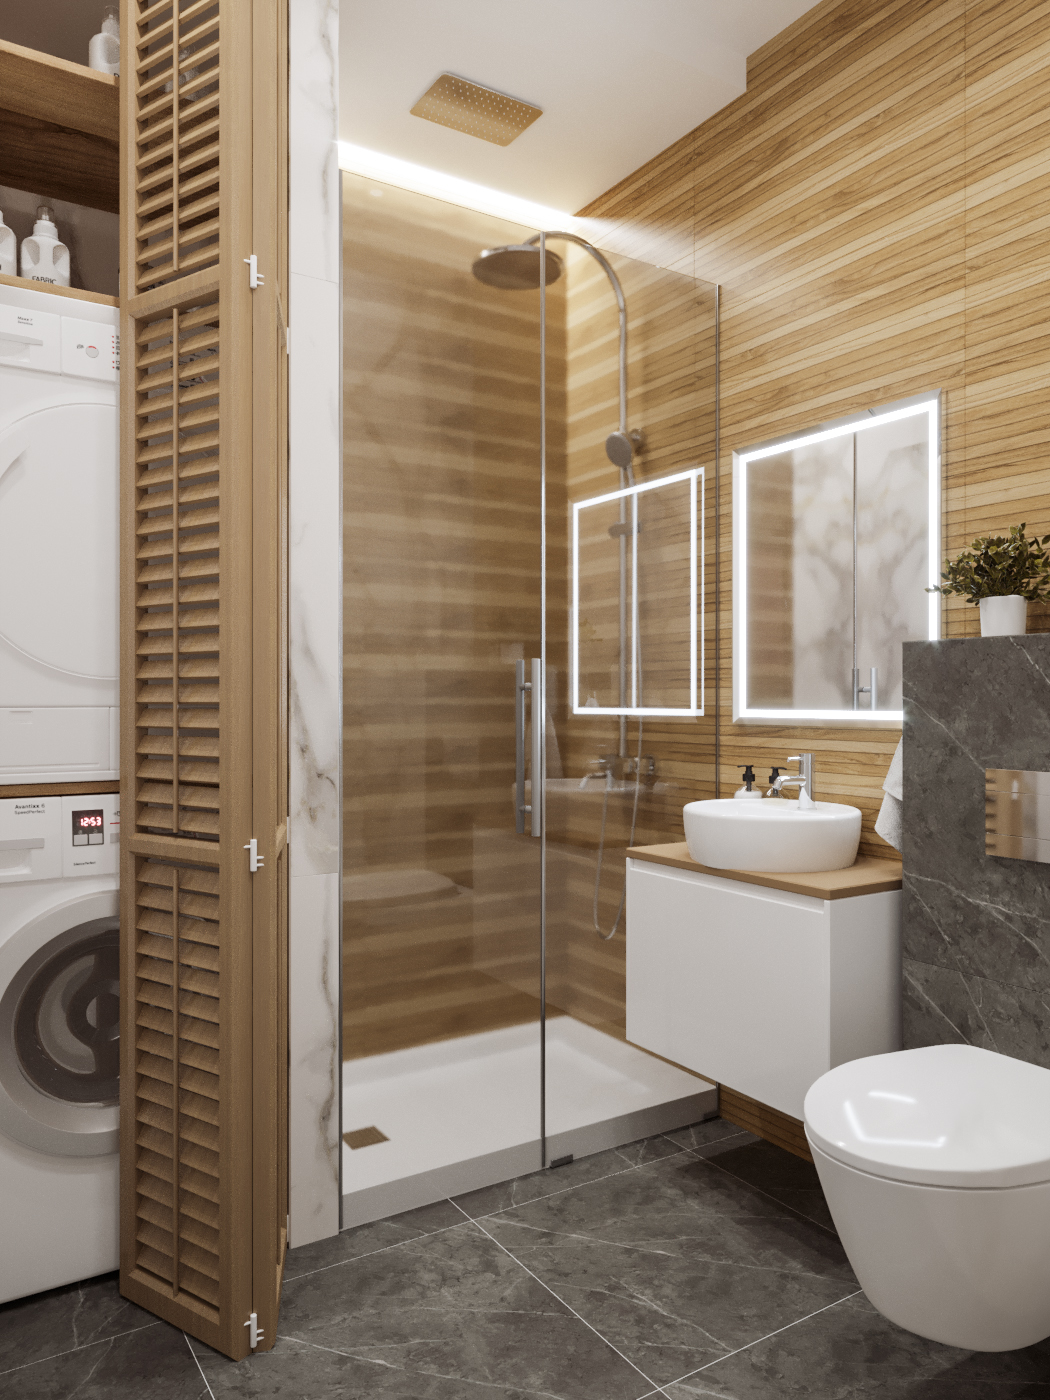 Фото № 2: Современный дизайн ванной комнаты